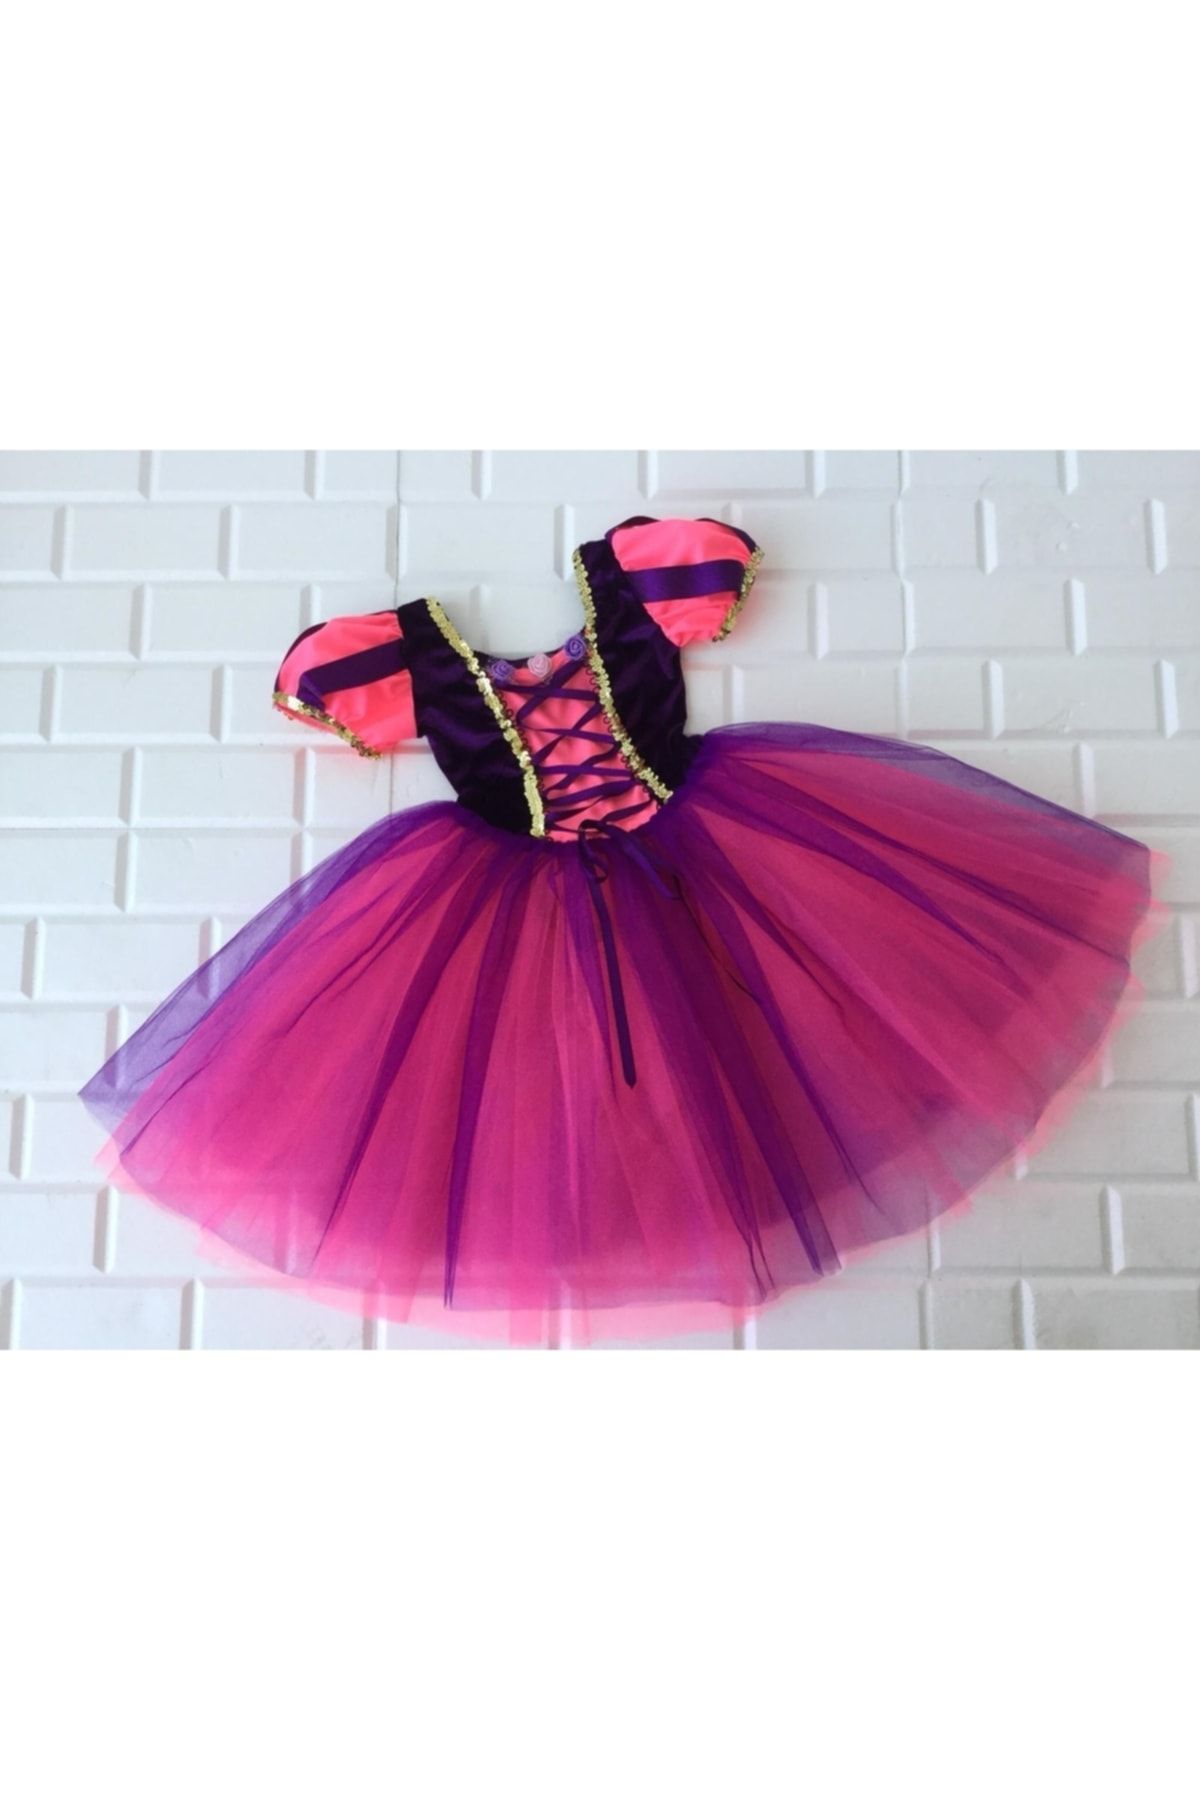 Lady Lou Prenses Rapunzel Kostümü, Kız Çocuk Elbise, Abiye Doğum Günü Kostüm Çok Kabarıktır, Özel Üretim,